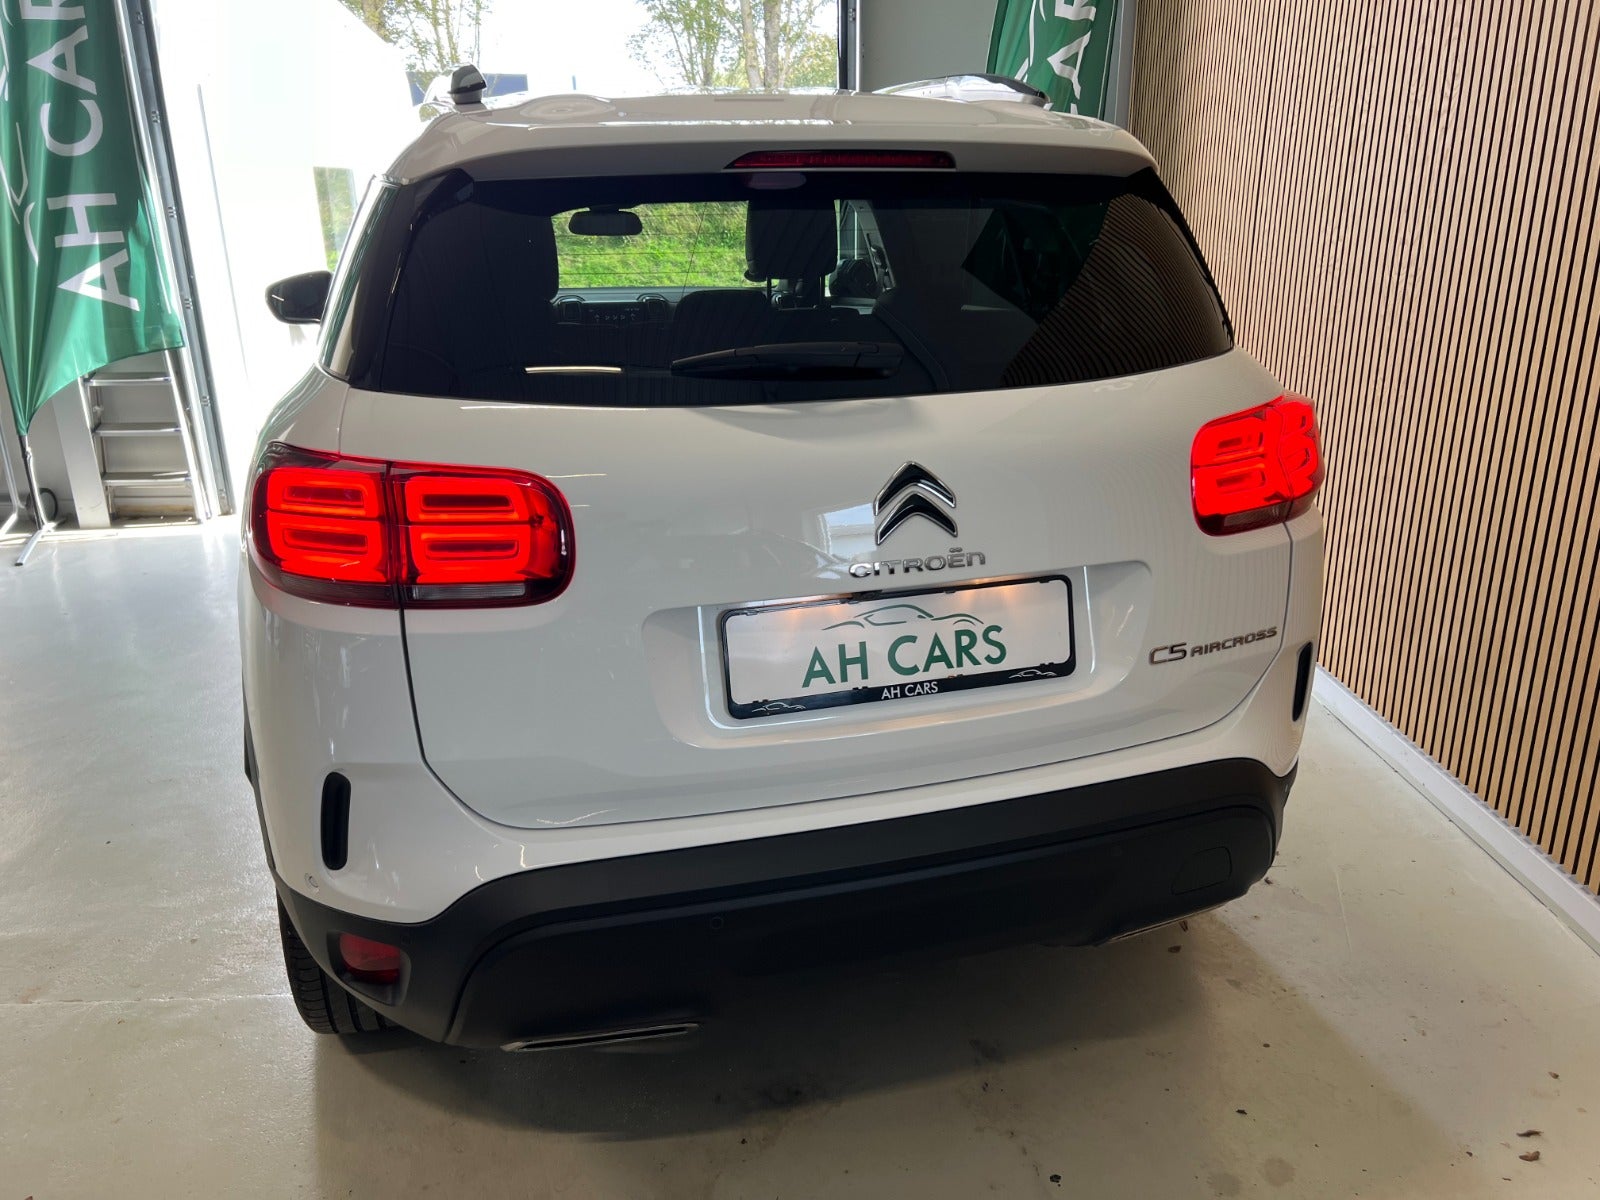 Citroën C5 Aircross 2020